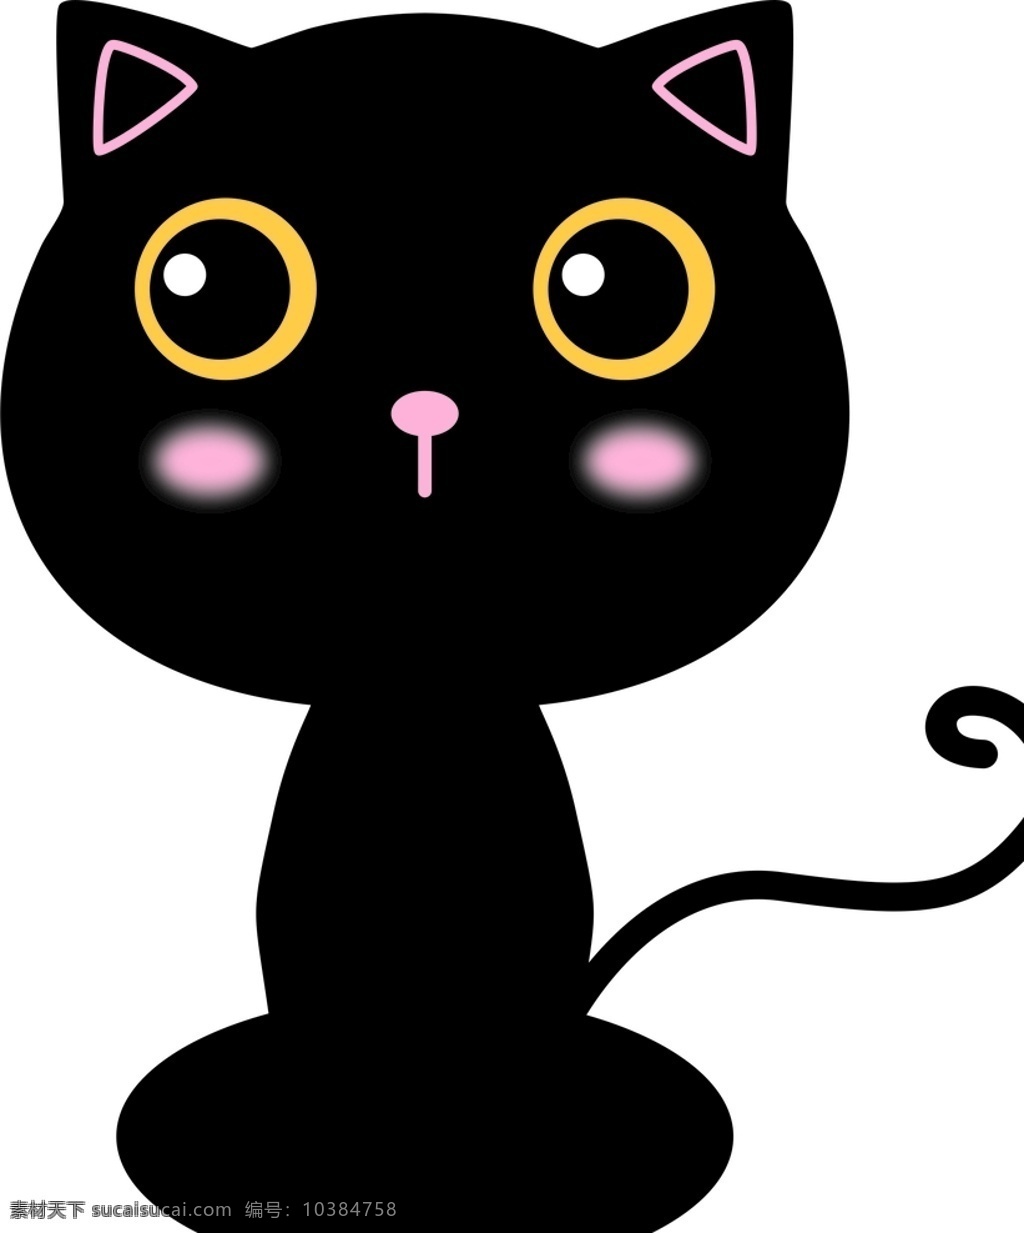 卡通黑猫 矢量黑猫 黑猫 可爱 小动物 卡通设计